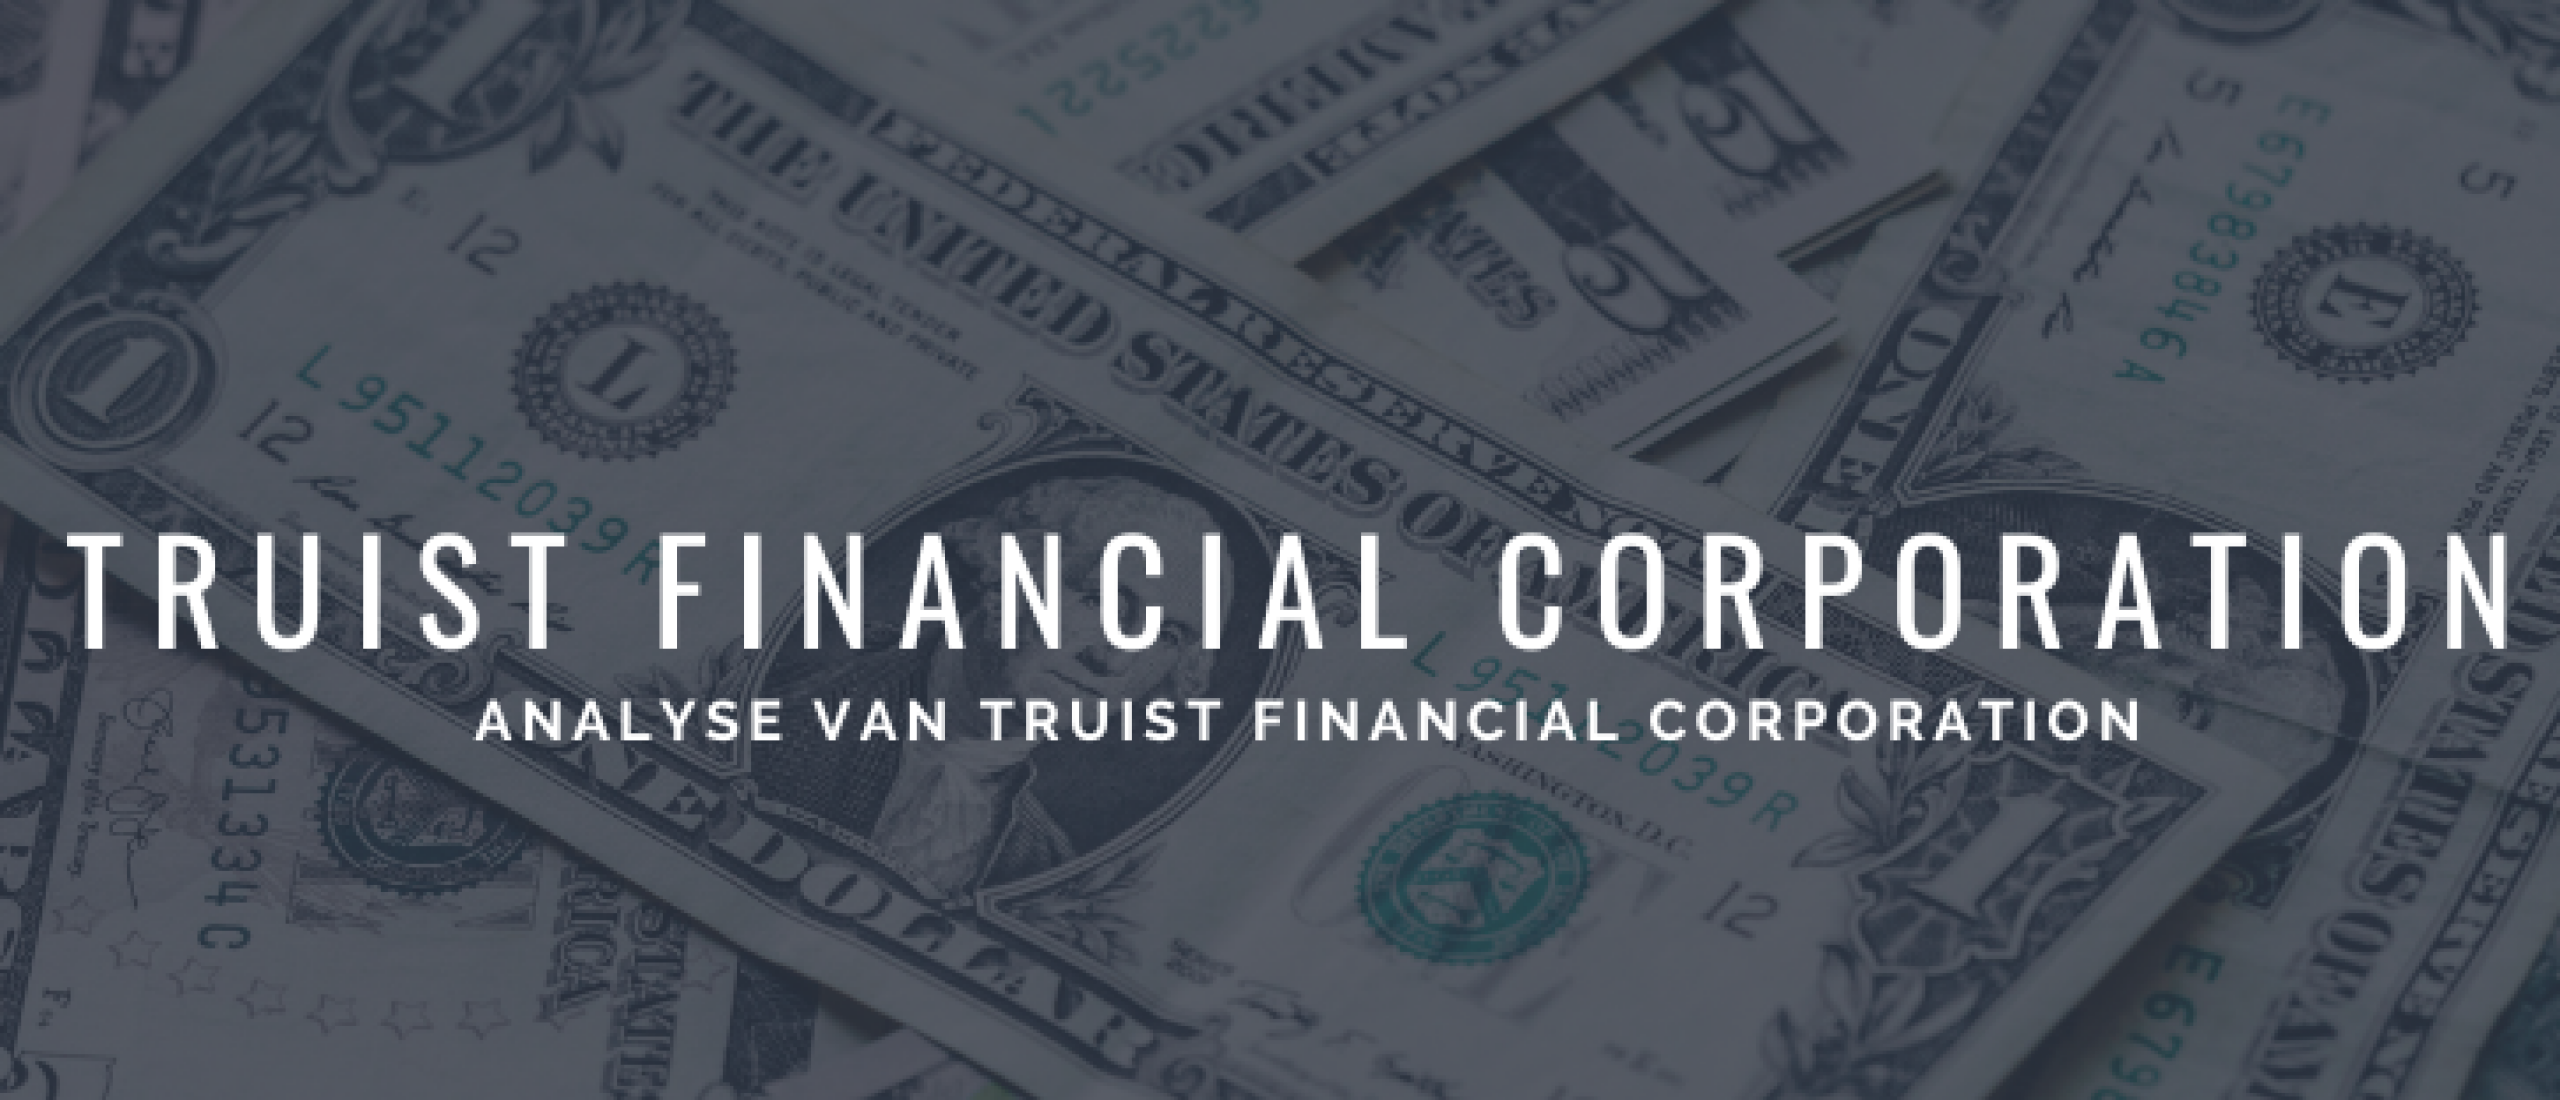 Truist Financial Corporation aandelen kopen? +6% Dividend en Groei | Happy Investors